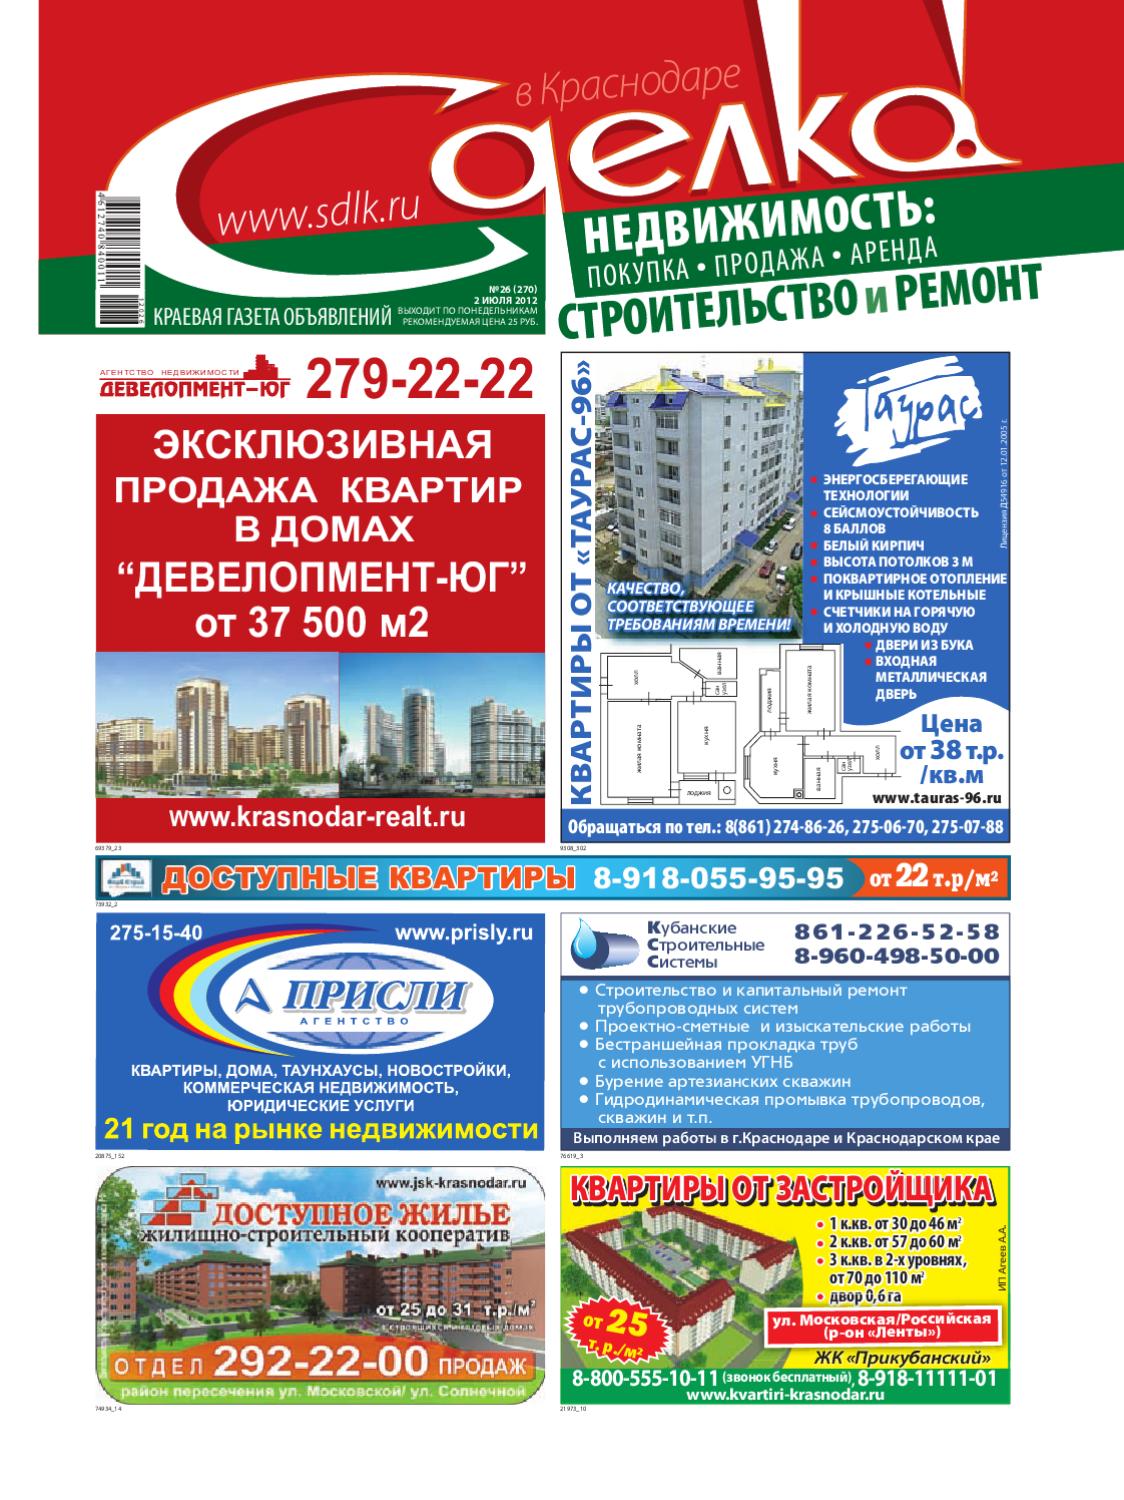 Сделка в Краснодаре №26, июль 2012